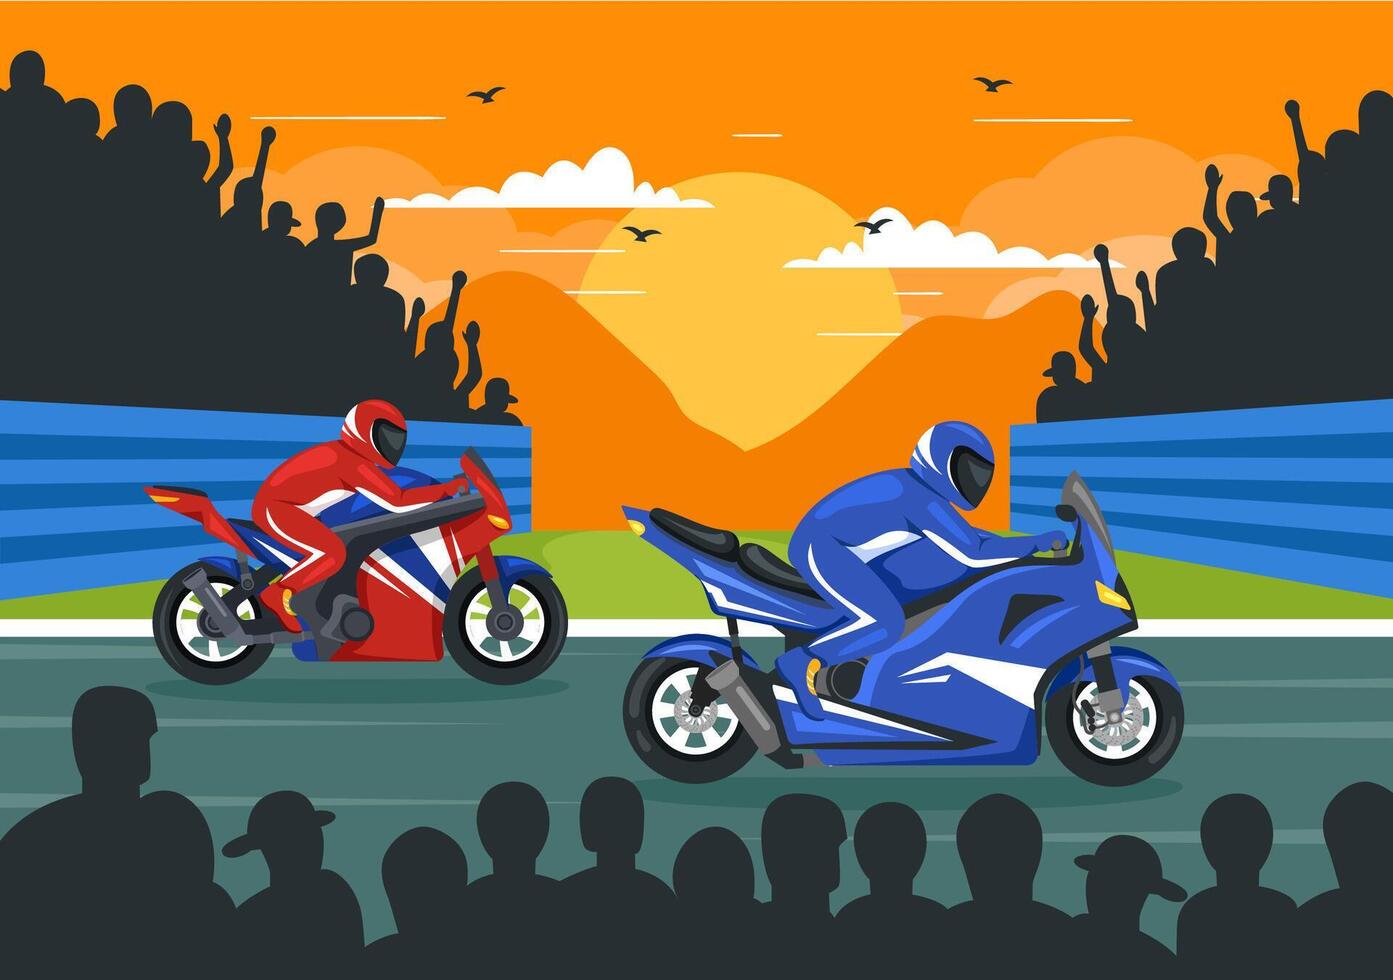 corrida motosport Rapidez bicicleta vetor ilustração para concorrência ou campeonato raça de vestindo roupa de esporte e equipamento dentro plano desenho animado fundo